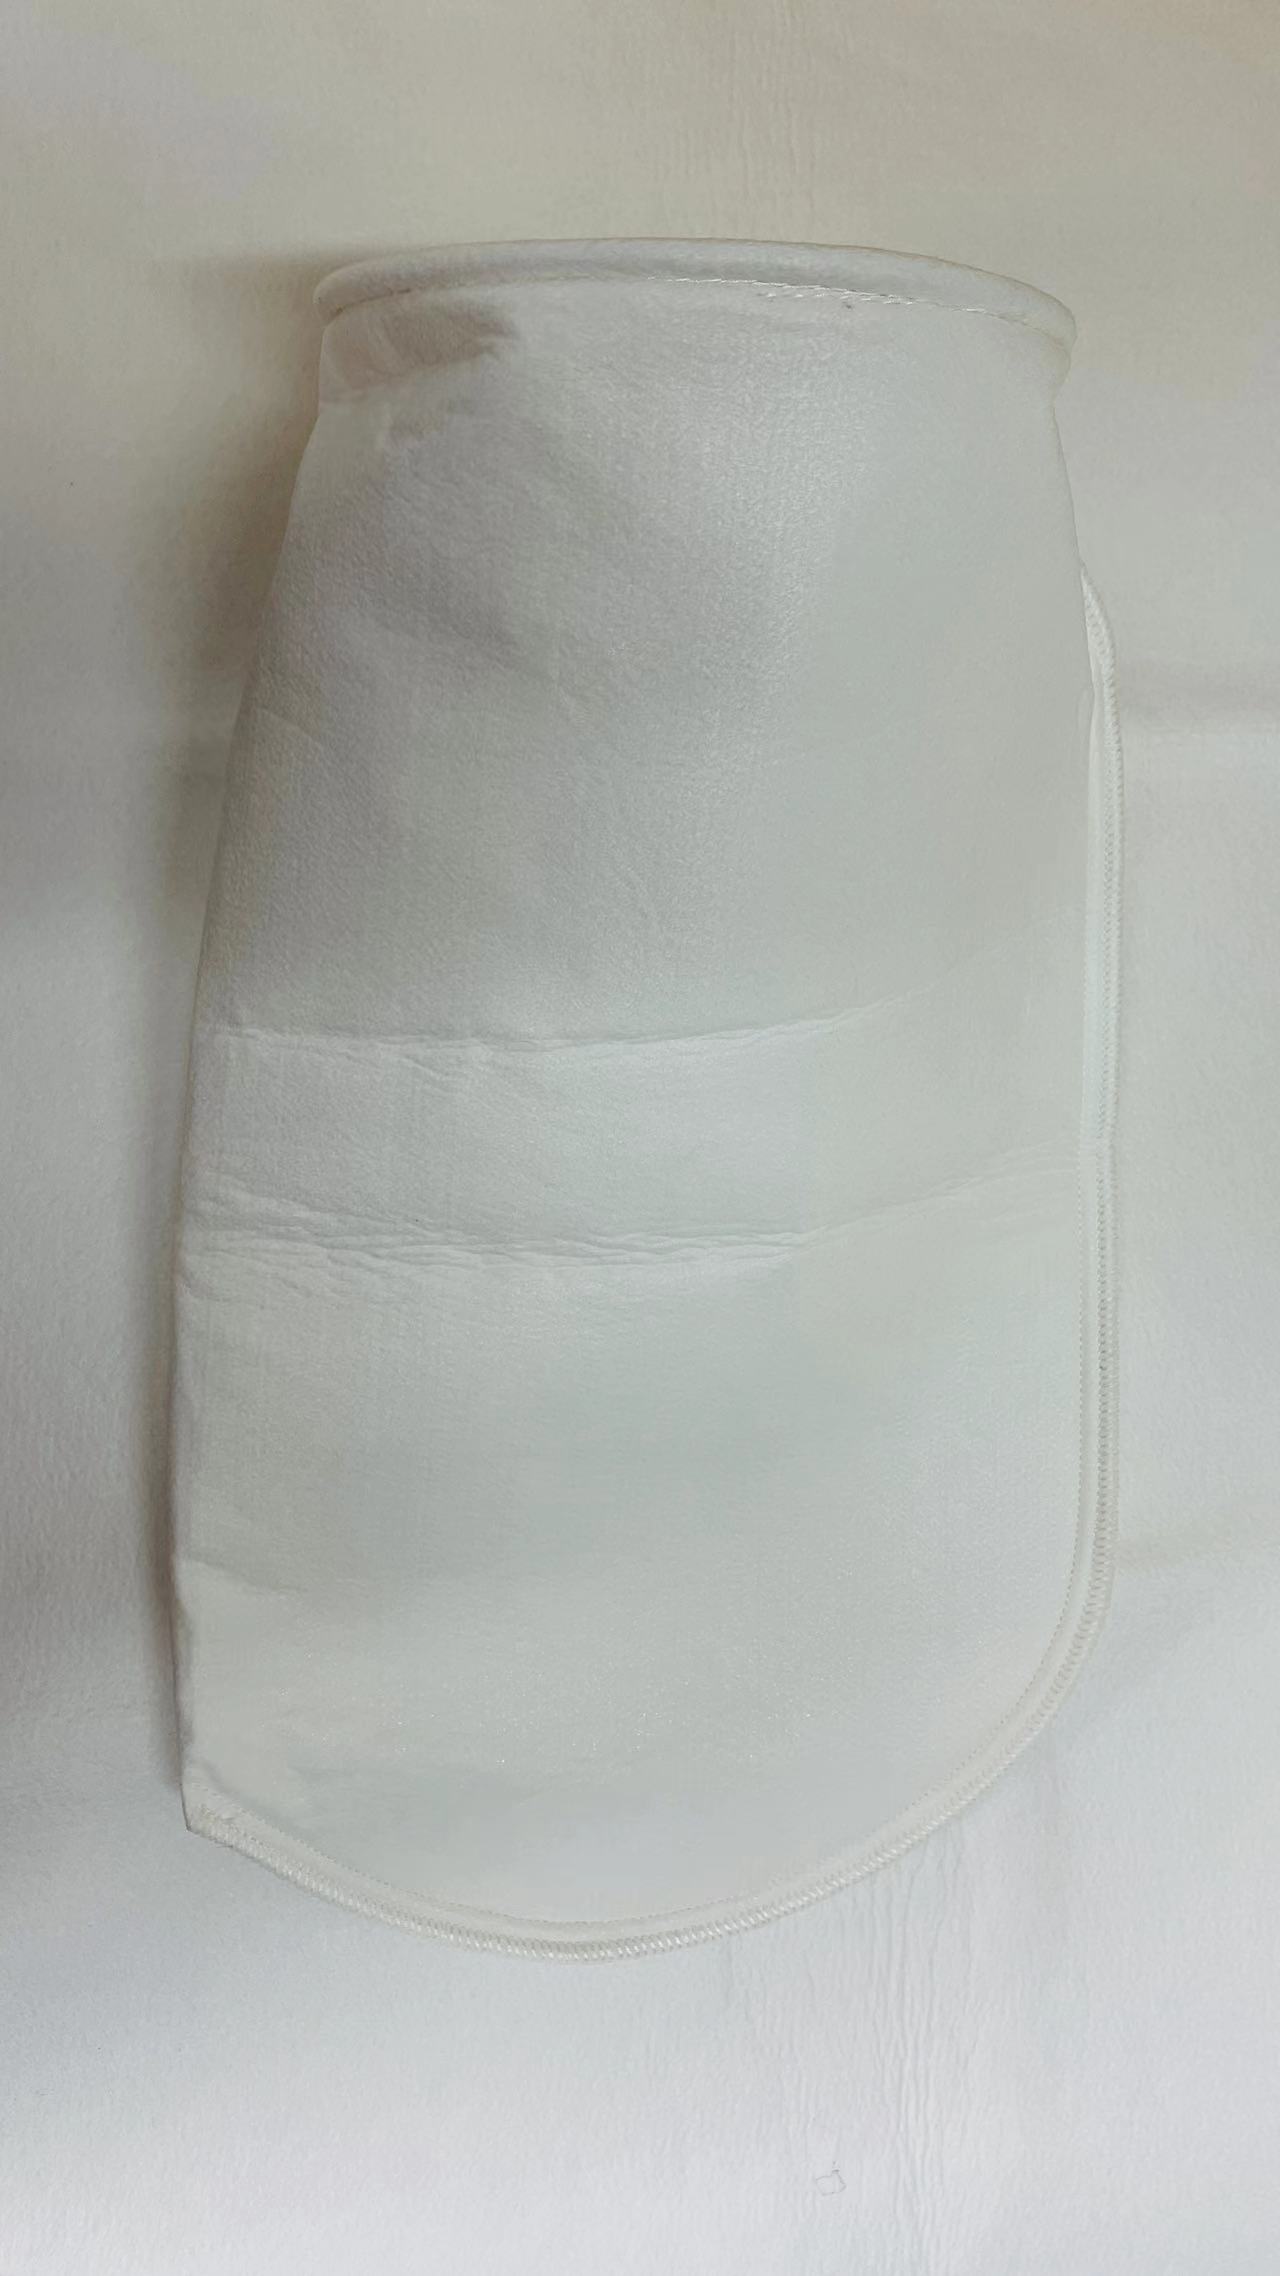 liquid filterbag backside